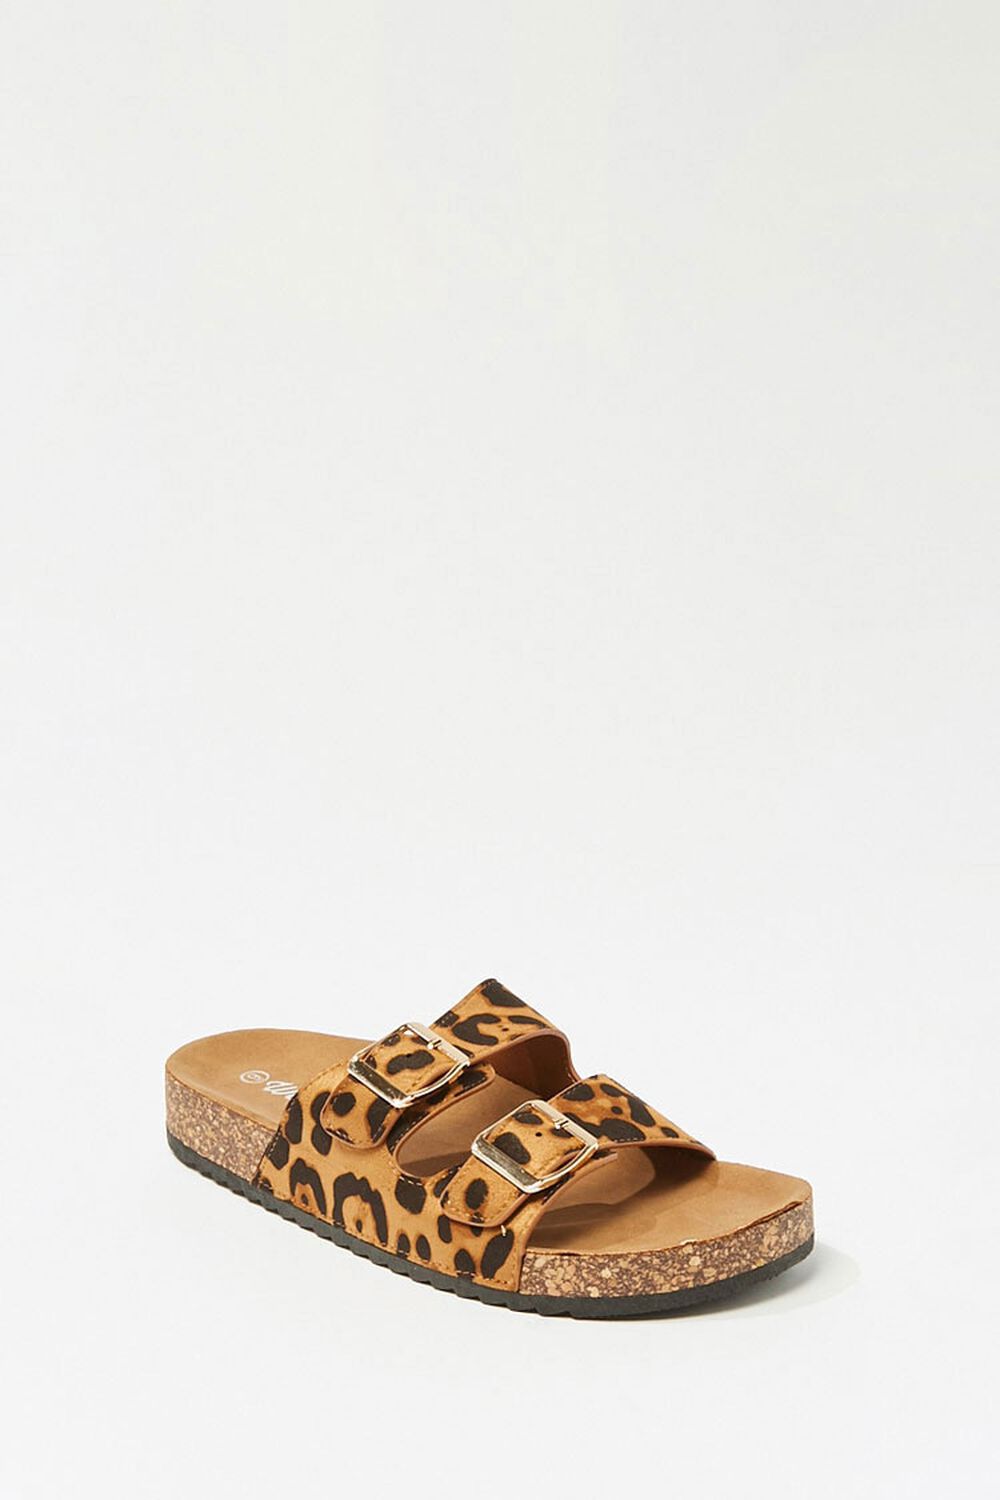 Leopard Print Slide Sandals